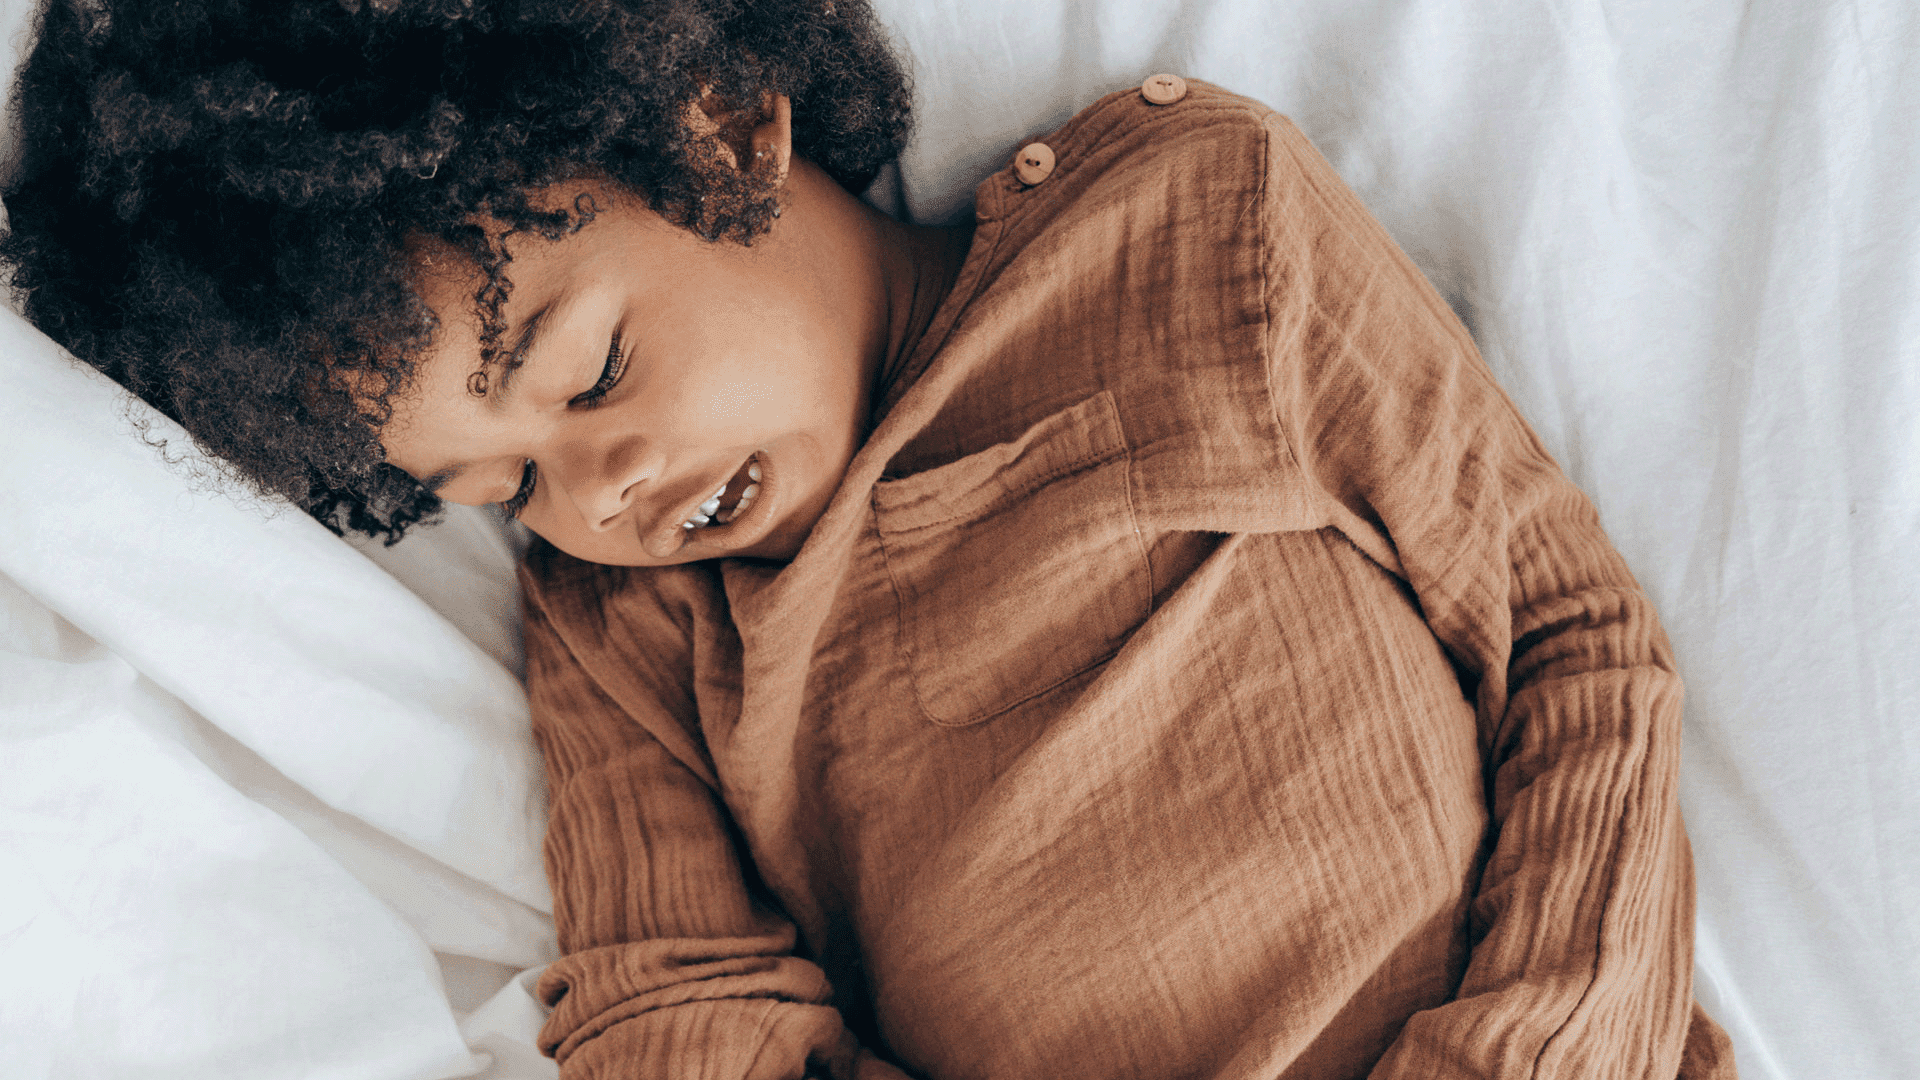 Apneia Obstrutiva do Sono na Infância